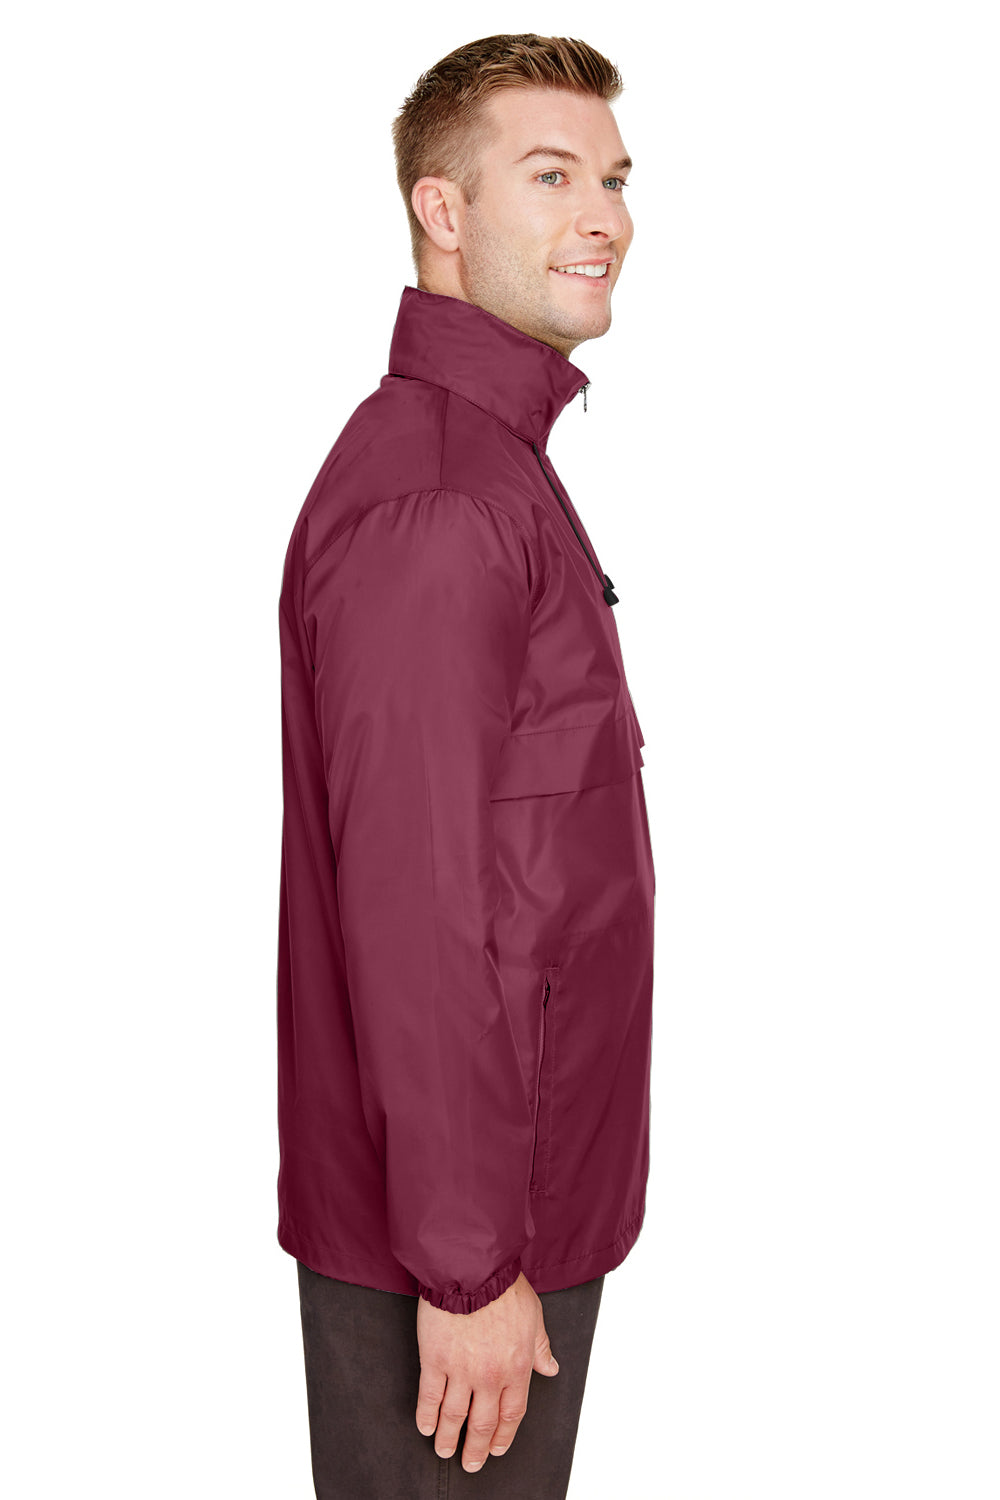 Team 365 TT73 Mens Zone Protect Water Resistant Full Zip Hooded Jacket Maroon Side